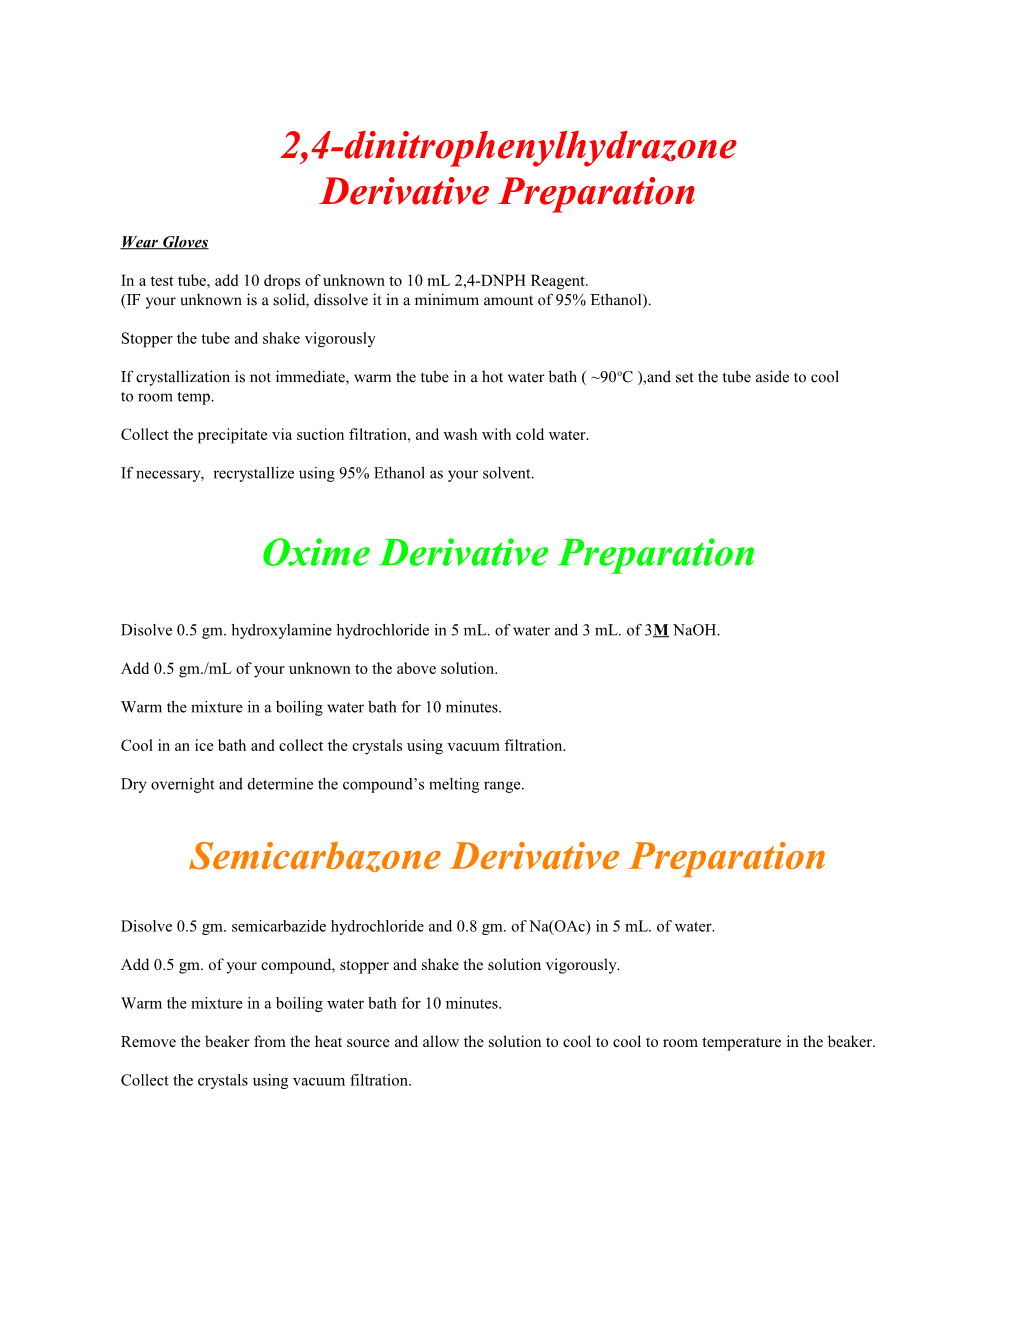 Oxime Derivative Preparation